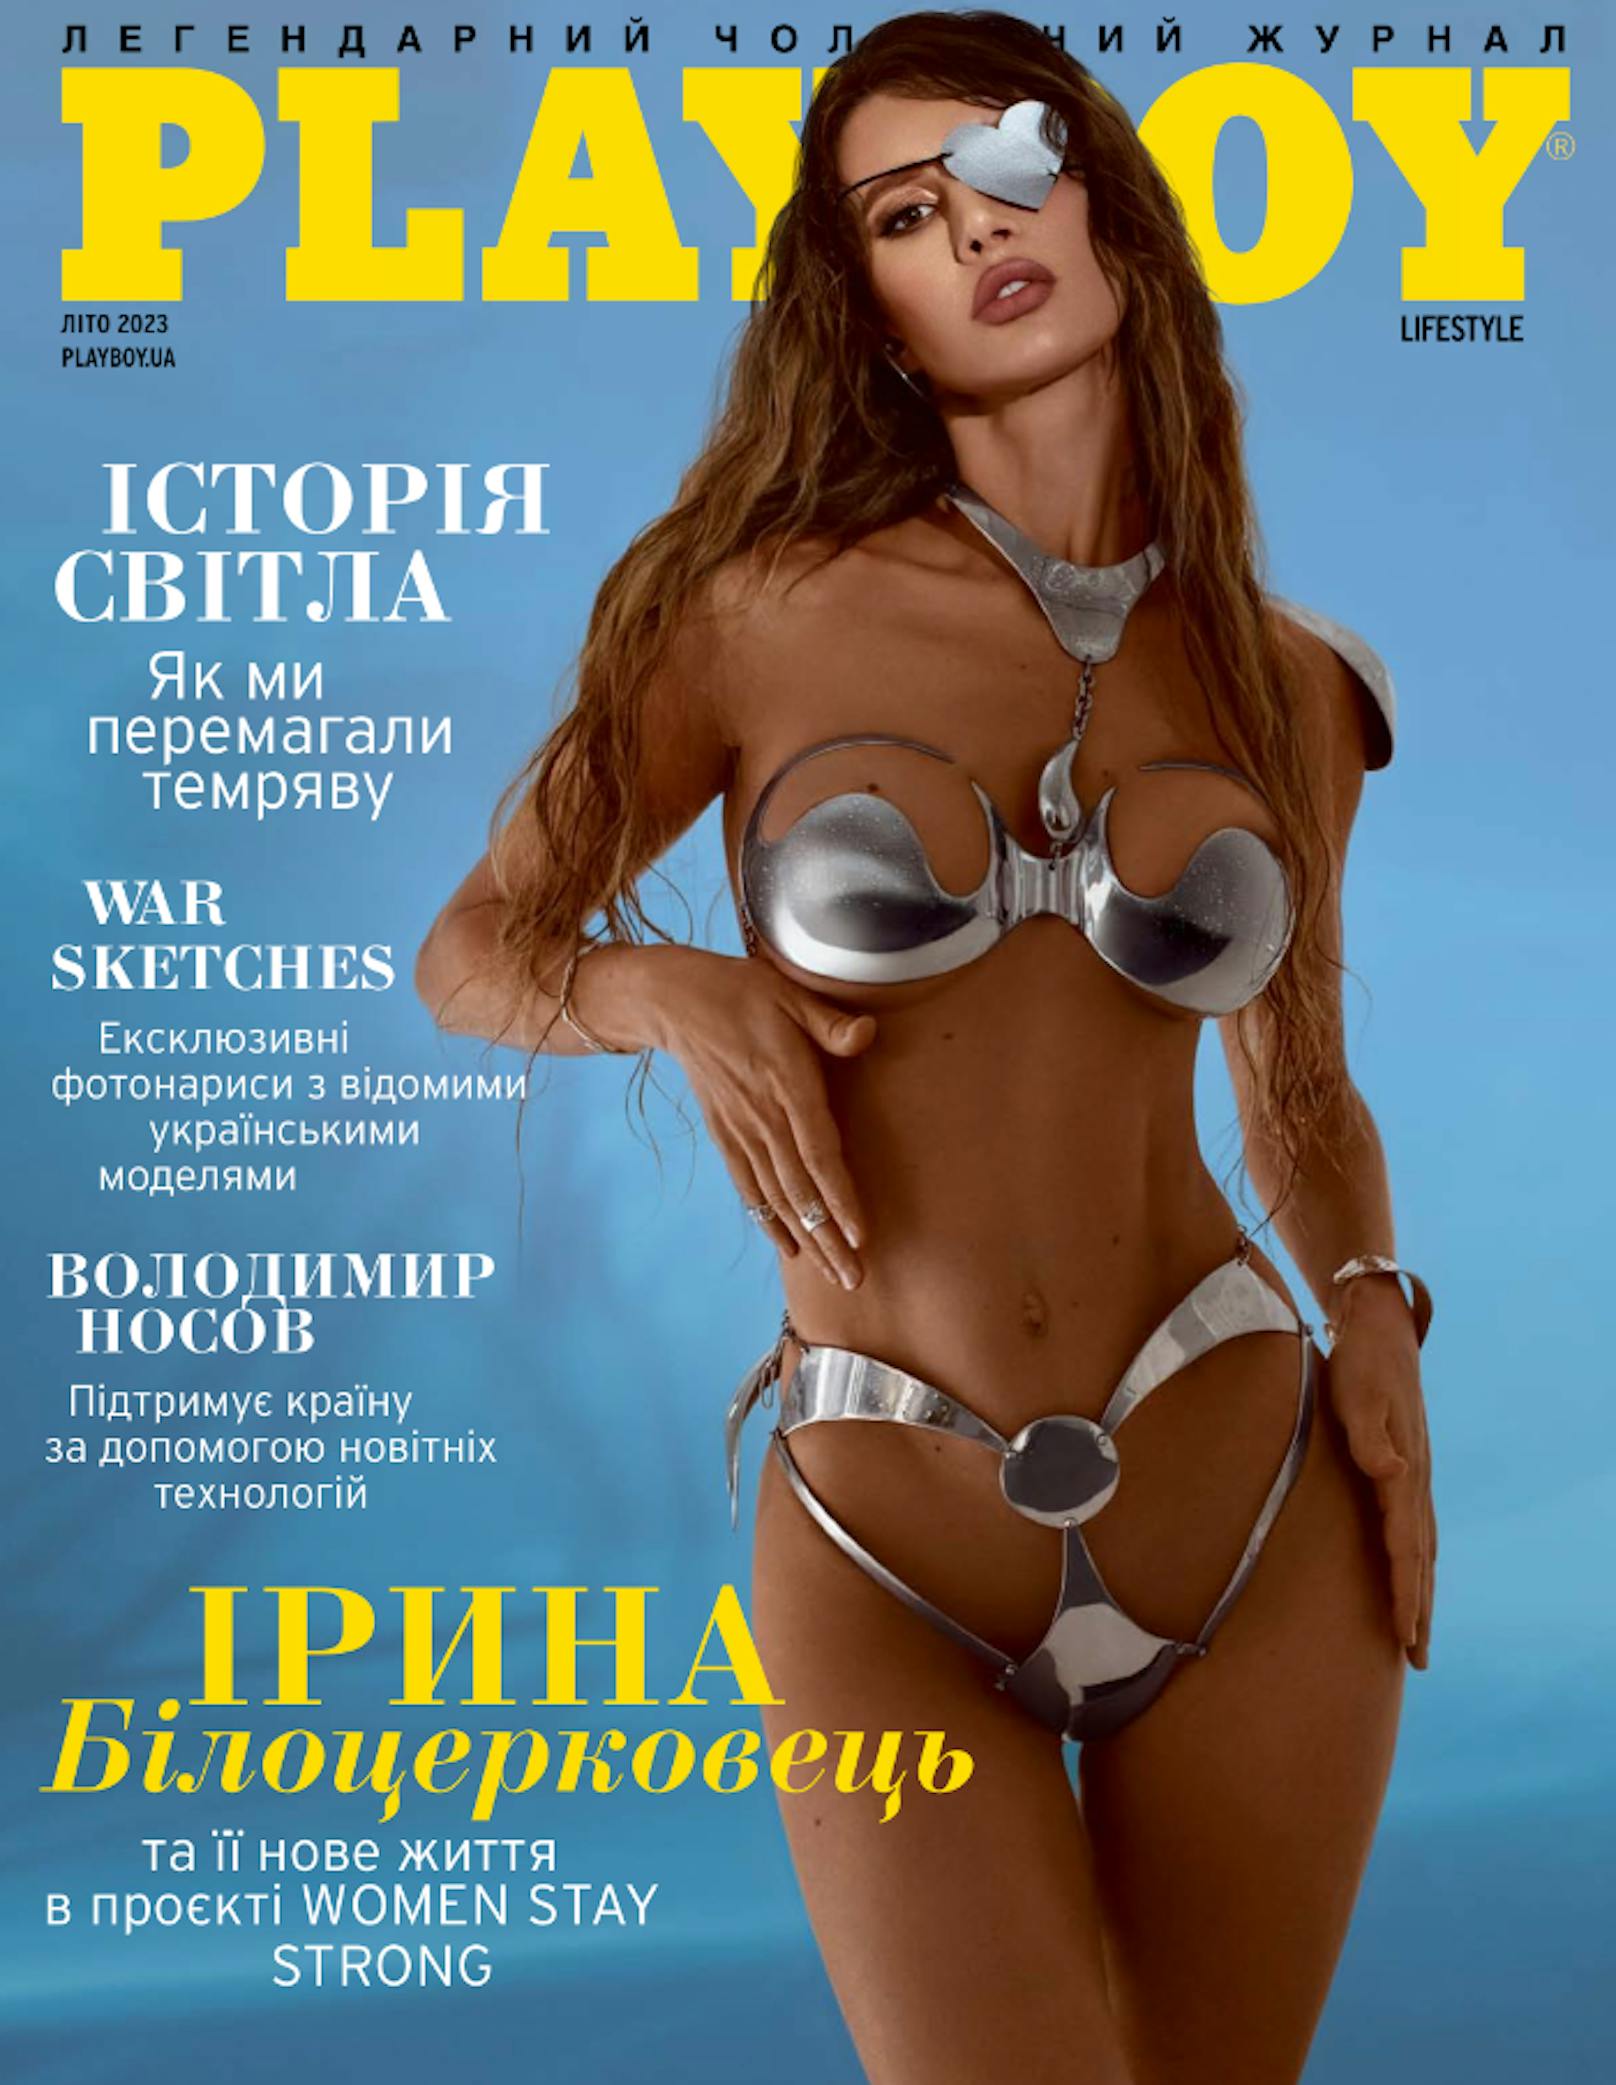 Ukrainerin verlor bei Angriff Auge, jetzt ziert sie erstes Playboy-Cover nach Kriegsbeginn.